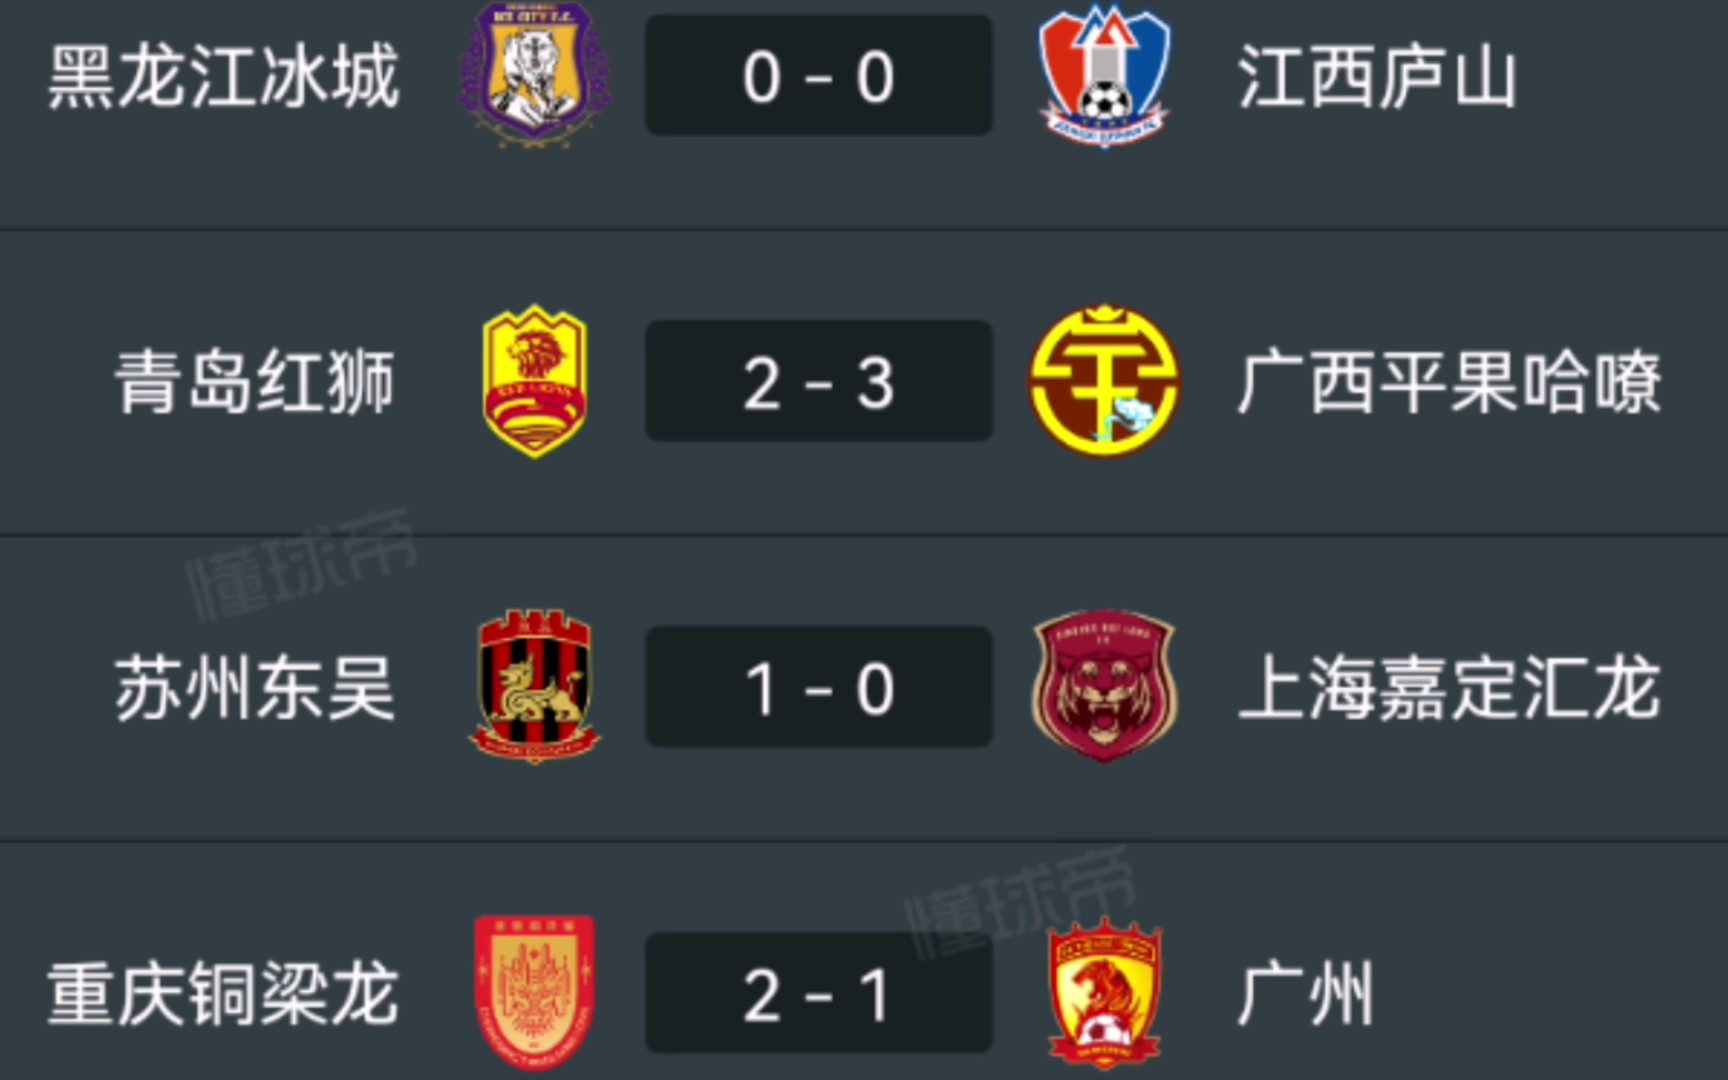 中甲第六轮第二比赛日评述 重庆广西苏州侥幸赢球分居积分榜三四五位